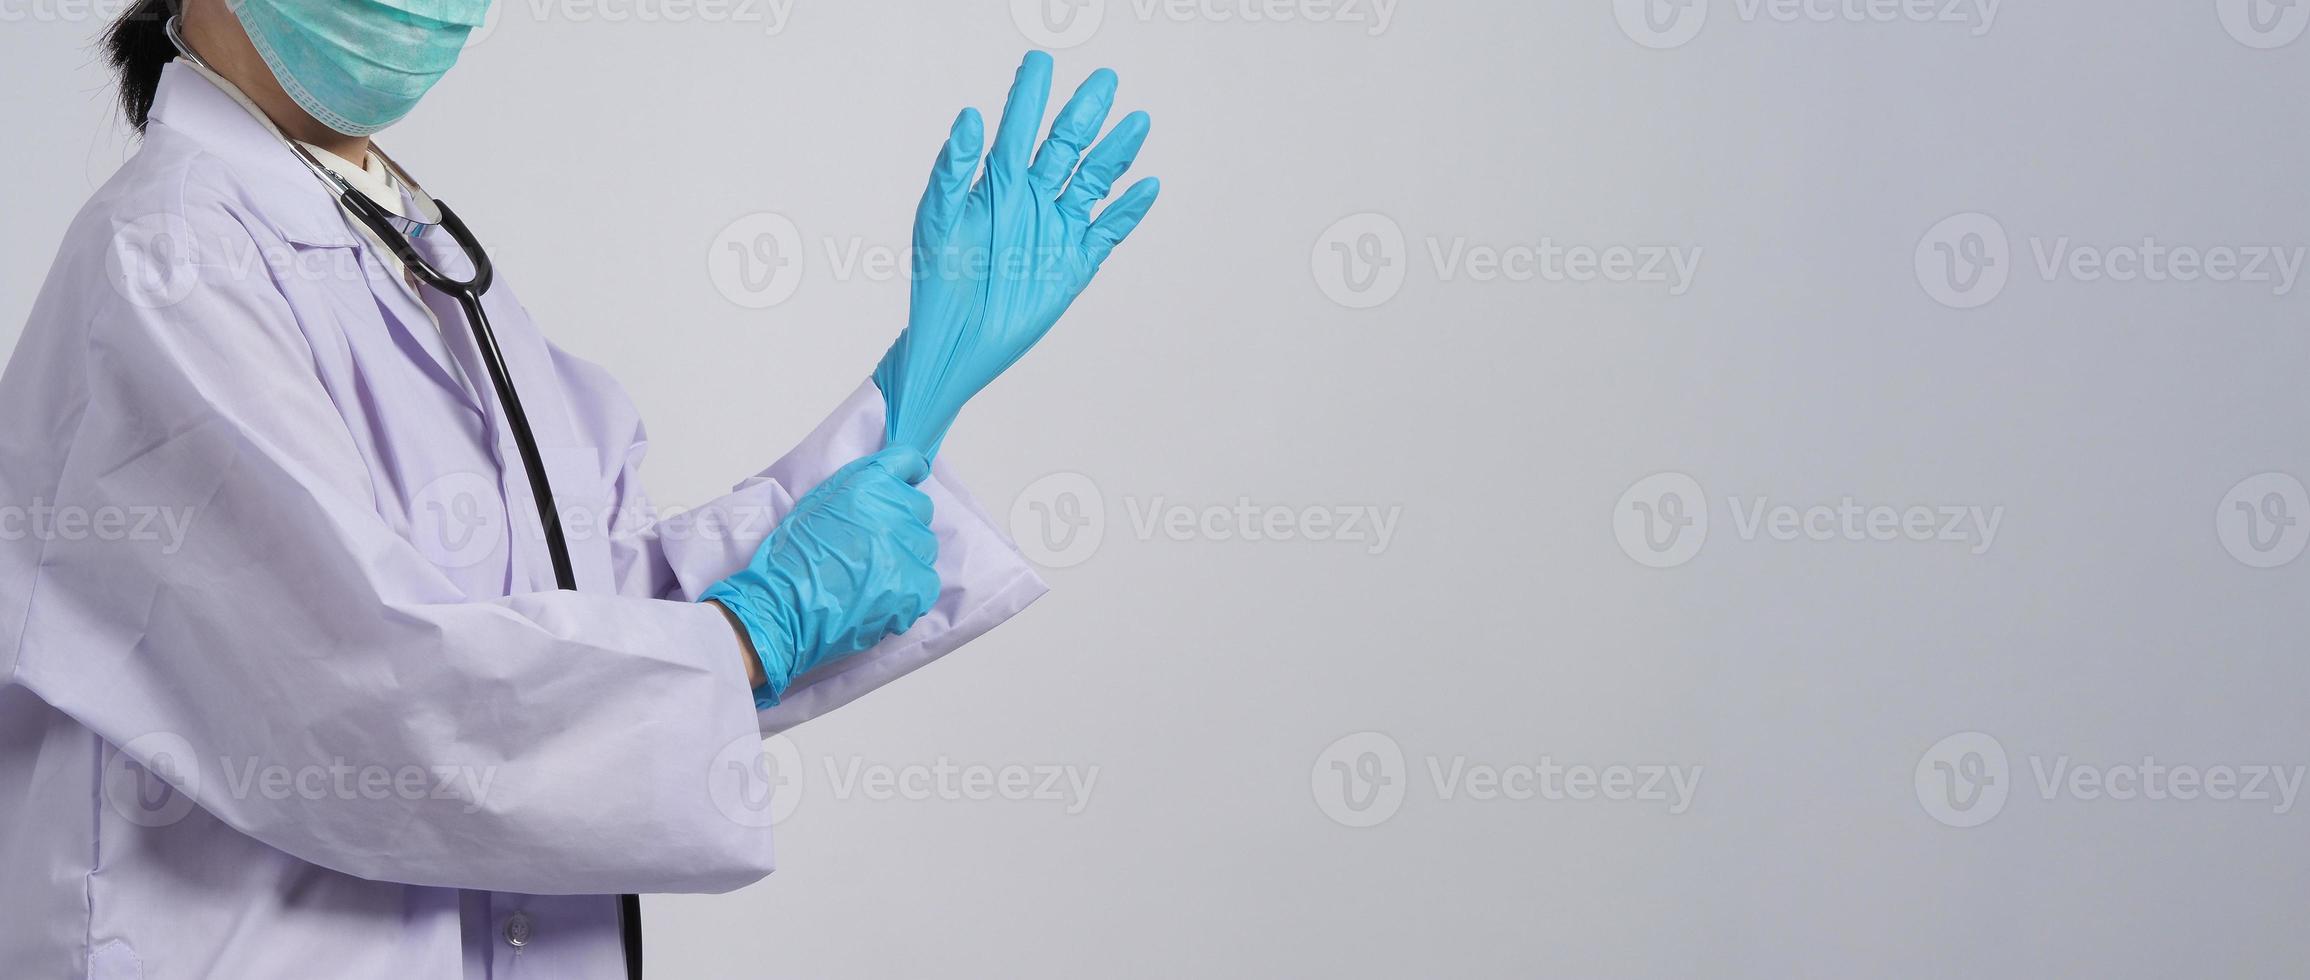 handschoenen dragen. aziatische arts draagt blauwe rubberen nitrilhandhandschoen. foto